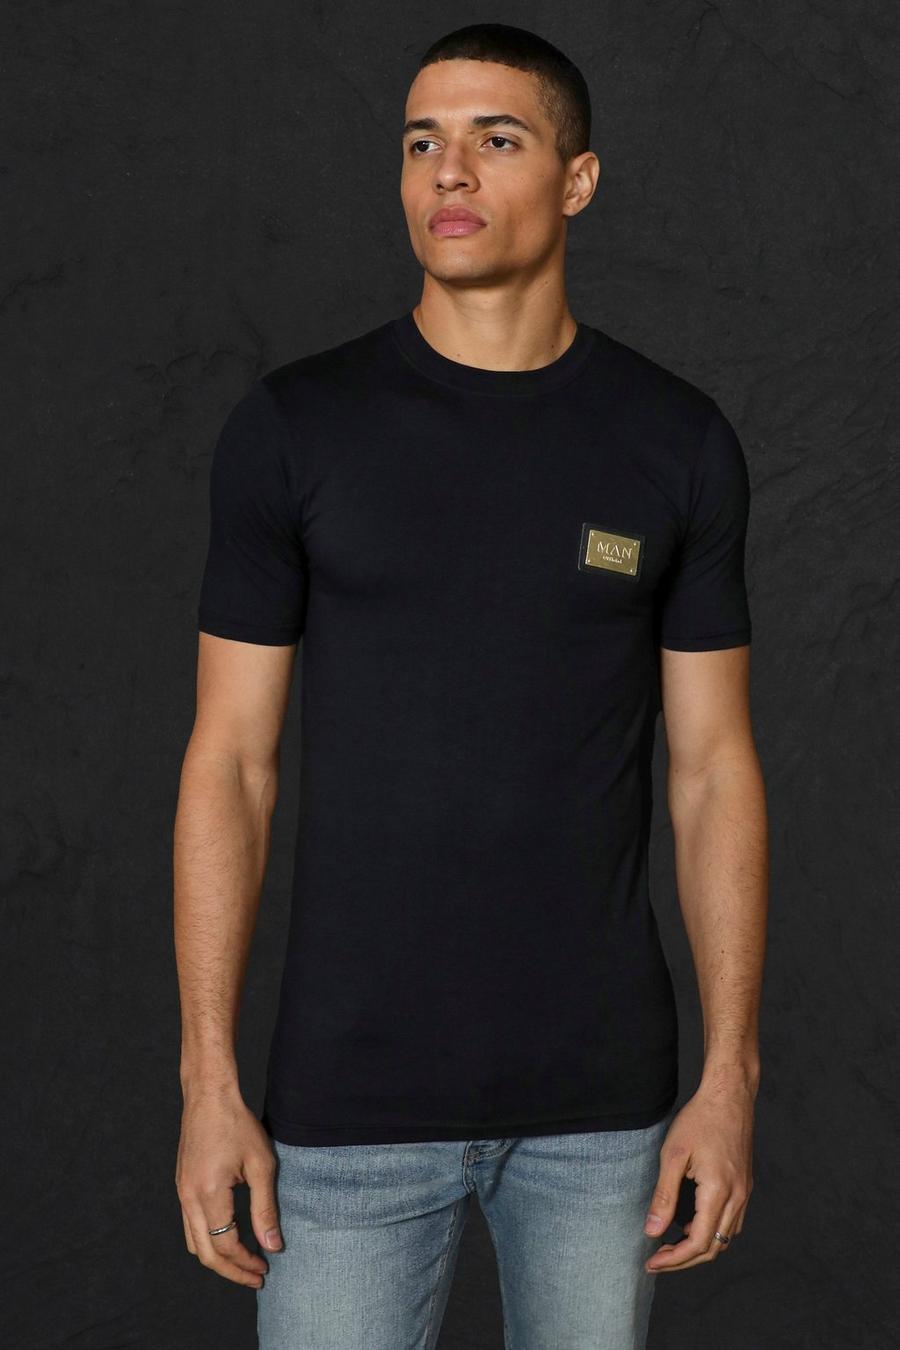 Camiseta con letras MAN doradas ajustada al músculo con etiqueta metálica, Black nero image number 1